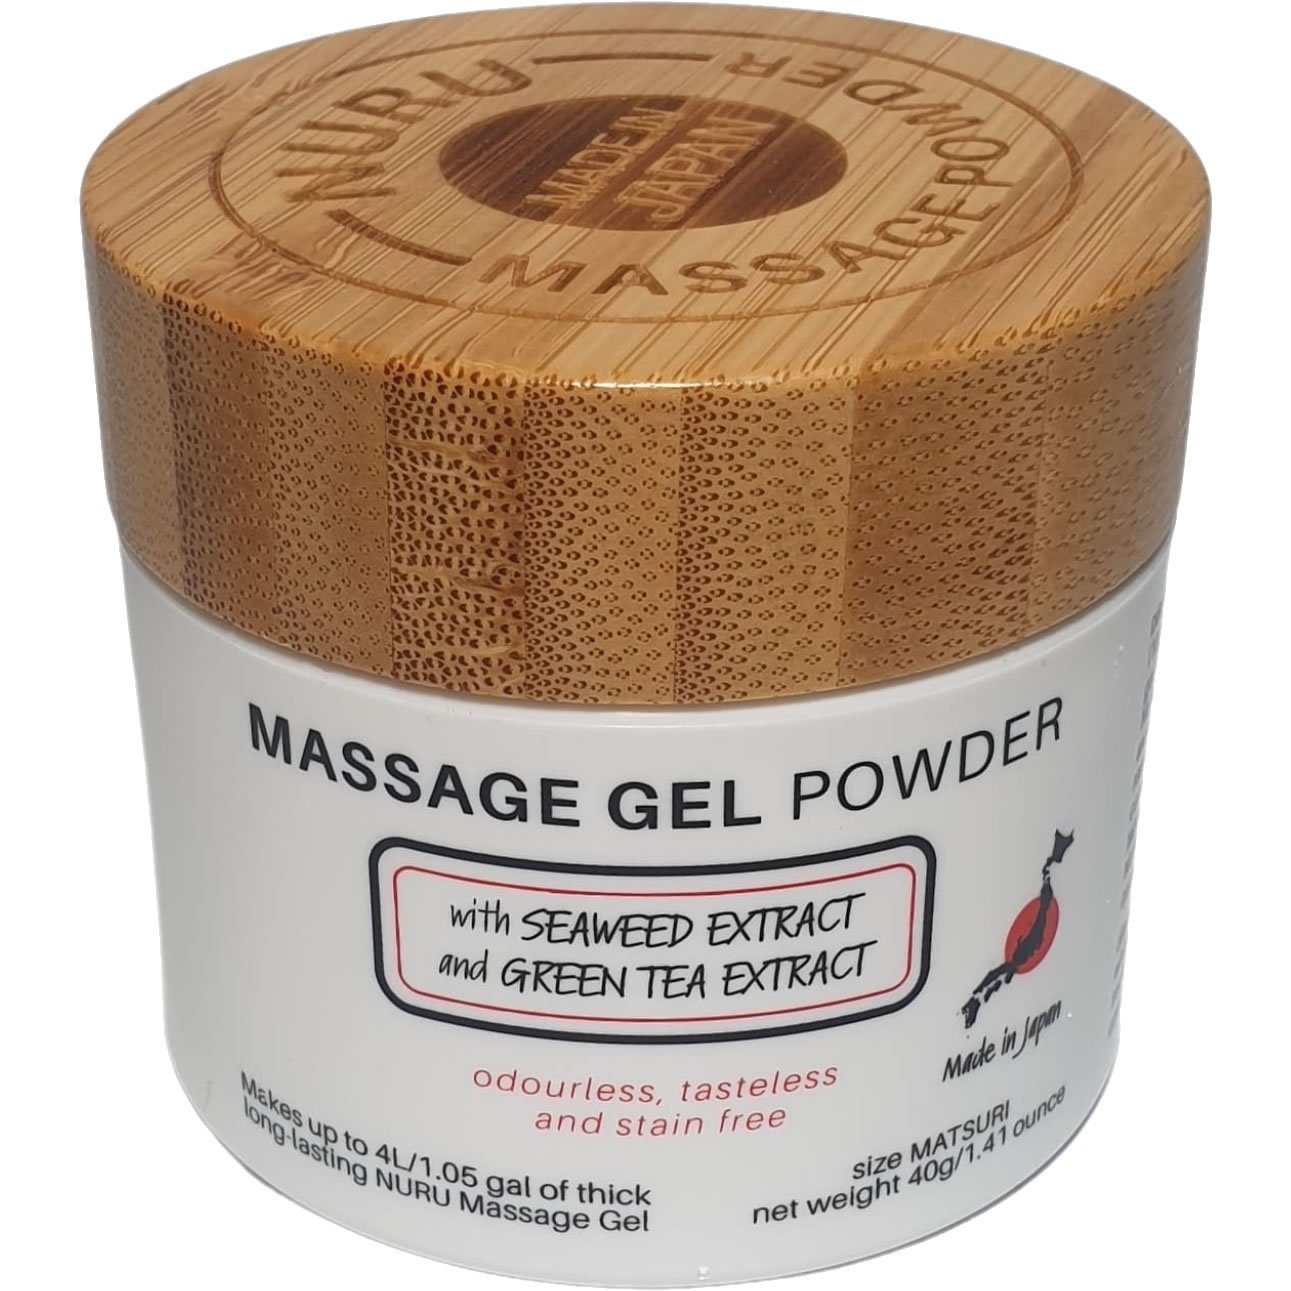 Dose Massagegel und 40g, Green Gel Massagegel-Pulver Powder (Nori Gleit- MATSURI Japan japanisches Nuru & Seaweed aus Tea), mit 1-tlg., Edition, Inhaltsstoffen Made in natürlichen Massage